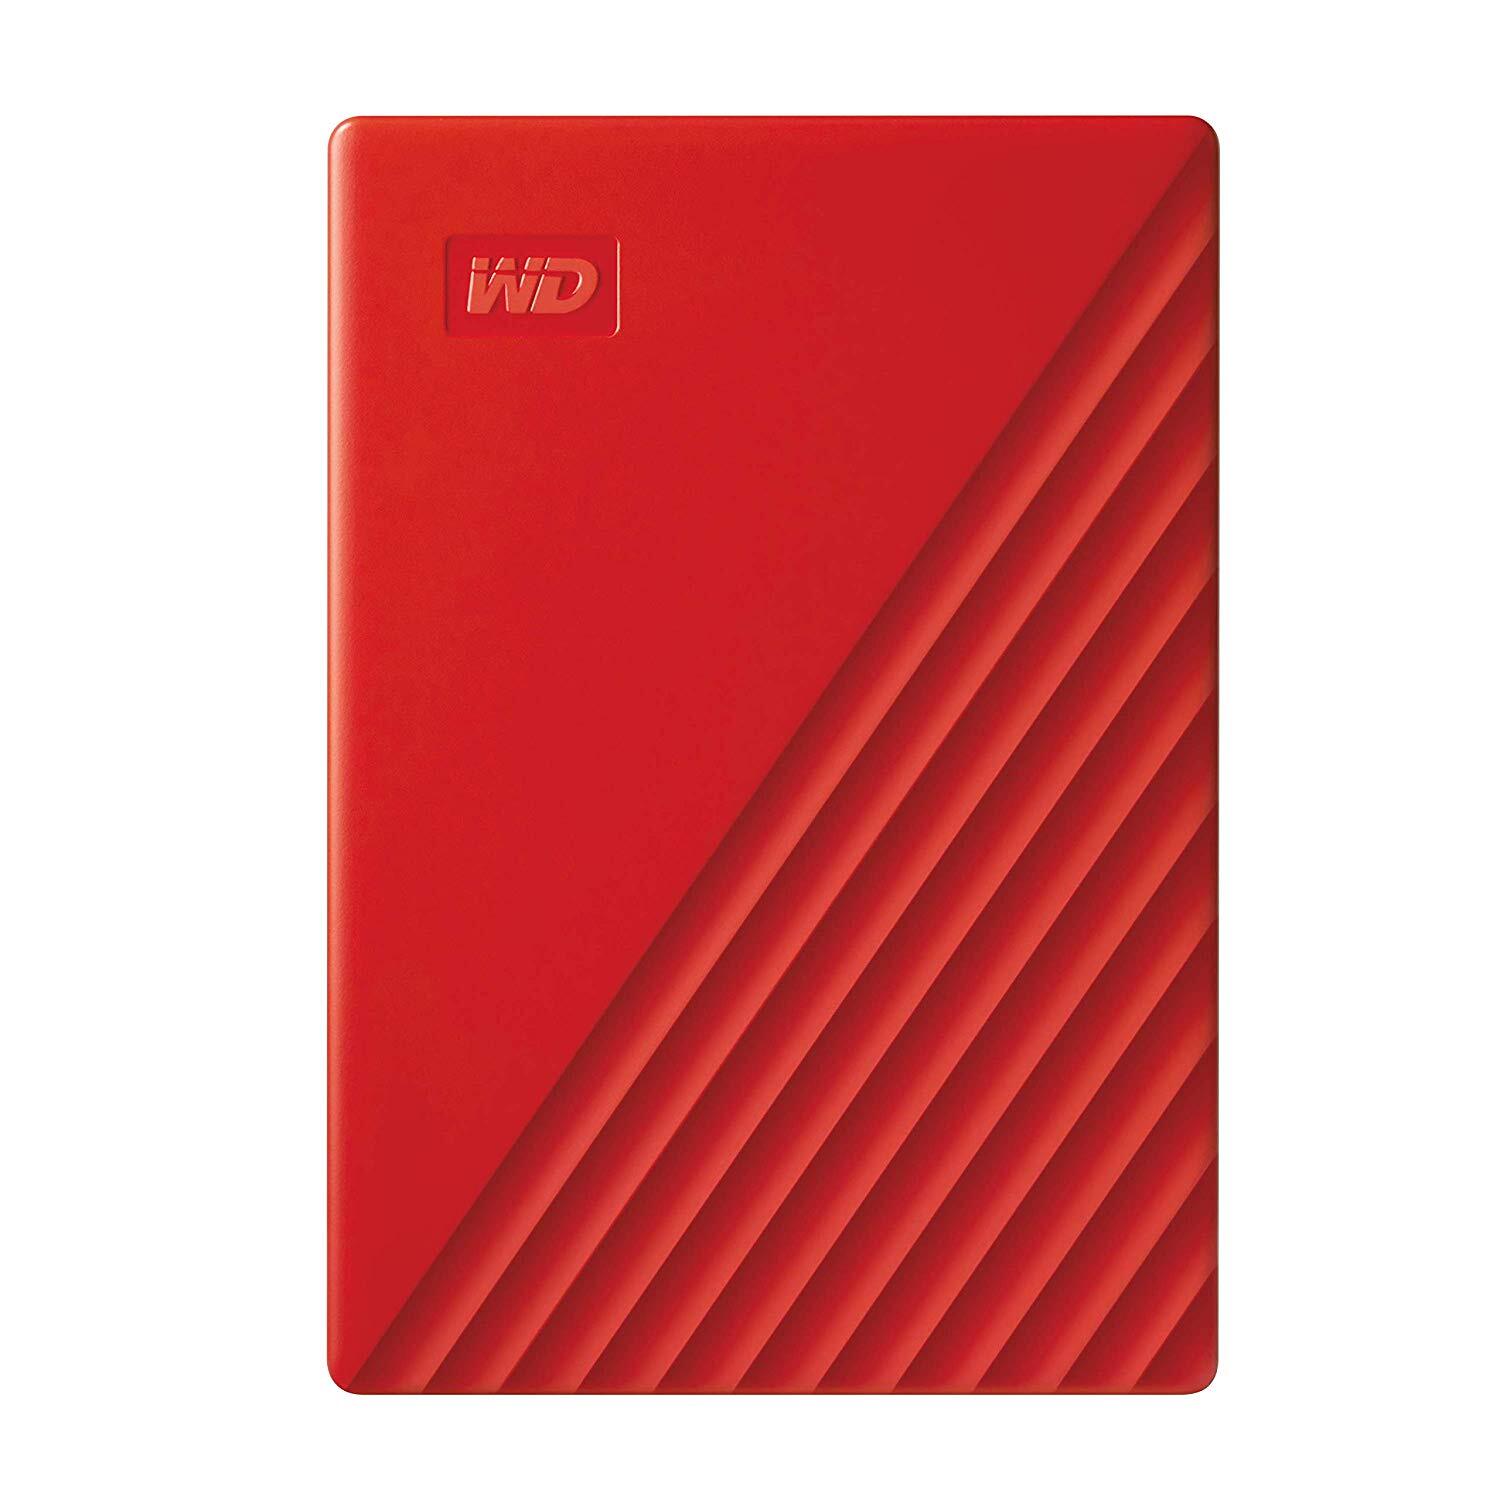 Ổ cứng HDD Di Động 2TB WD My Passport Red (WDBYVG0020BRD-WESN)